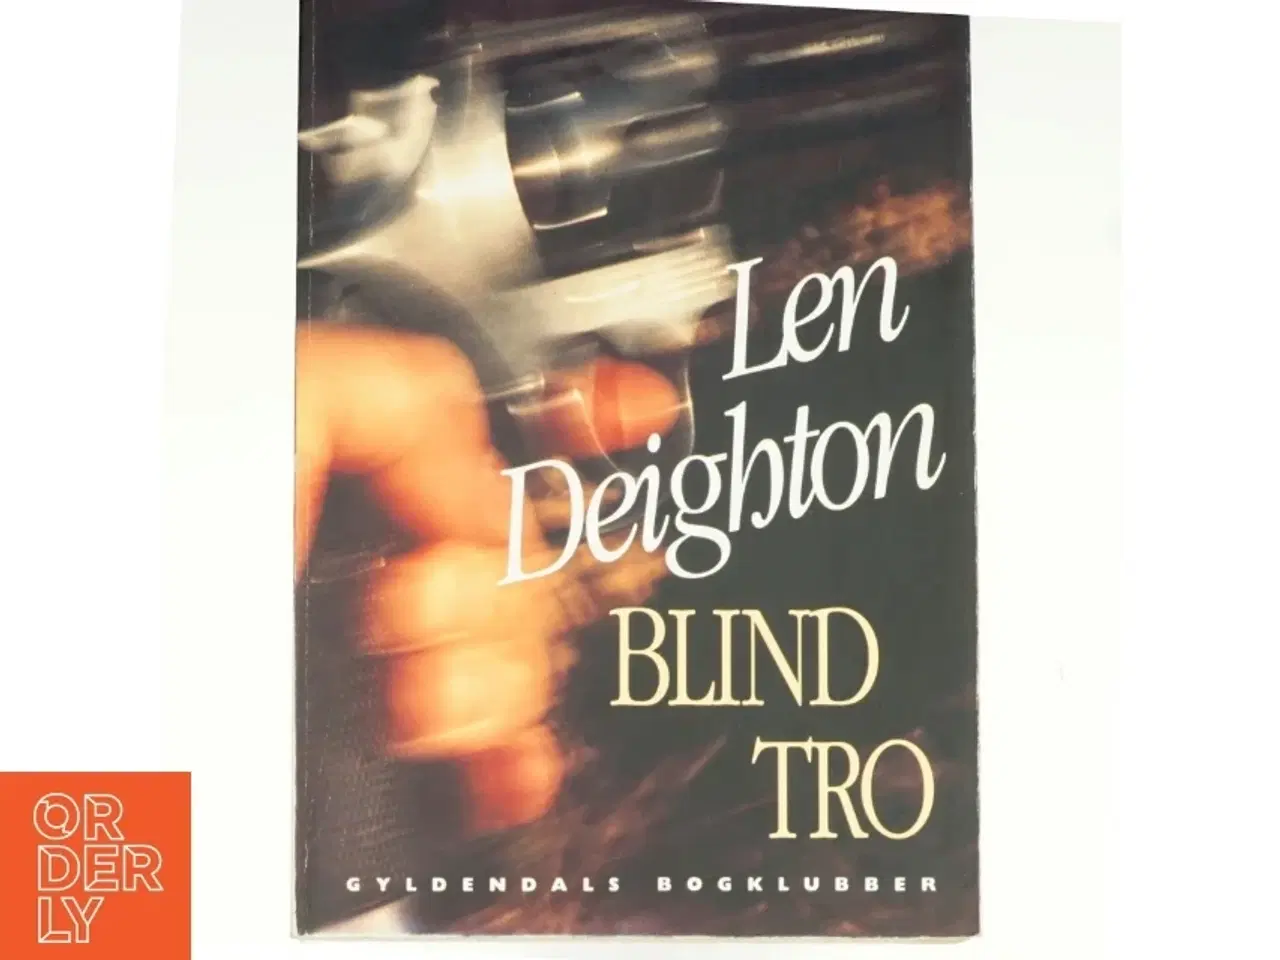 Billede 1 - Blind tro af Len Deighton (bog)